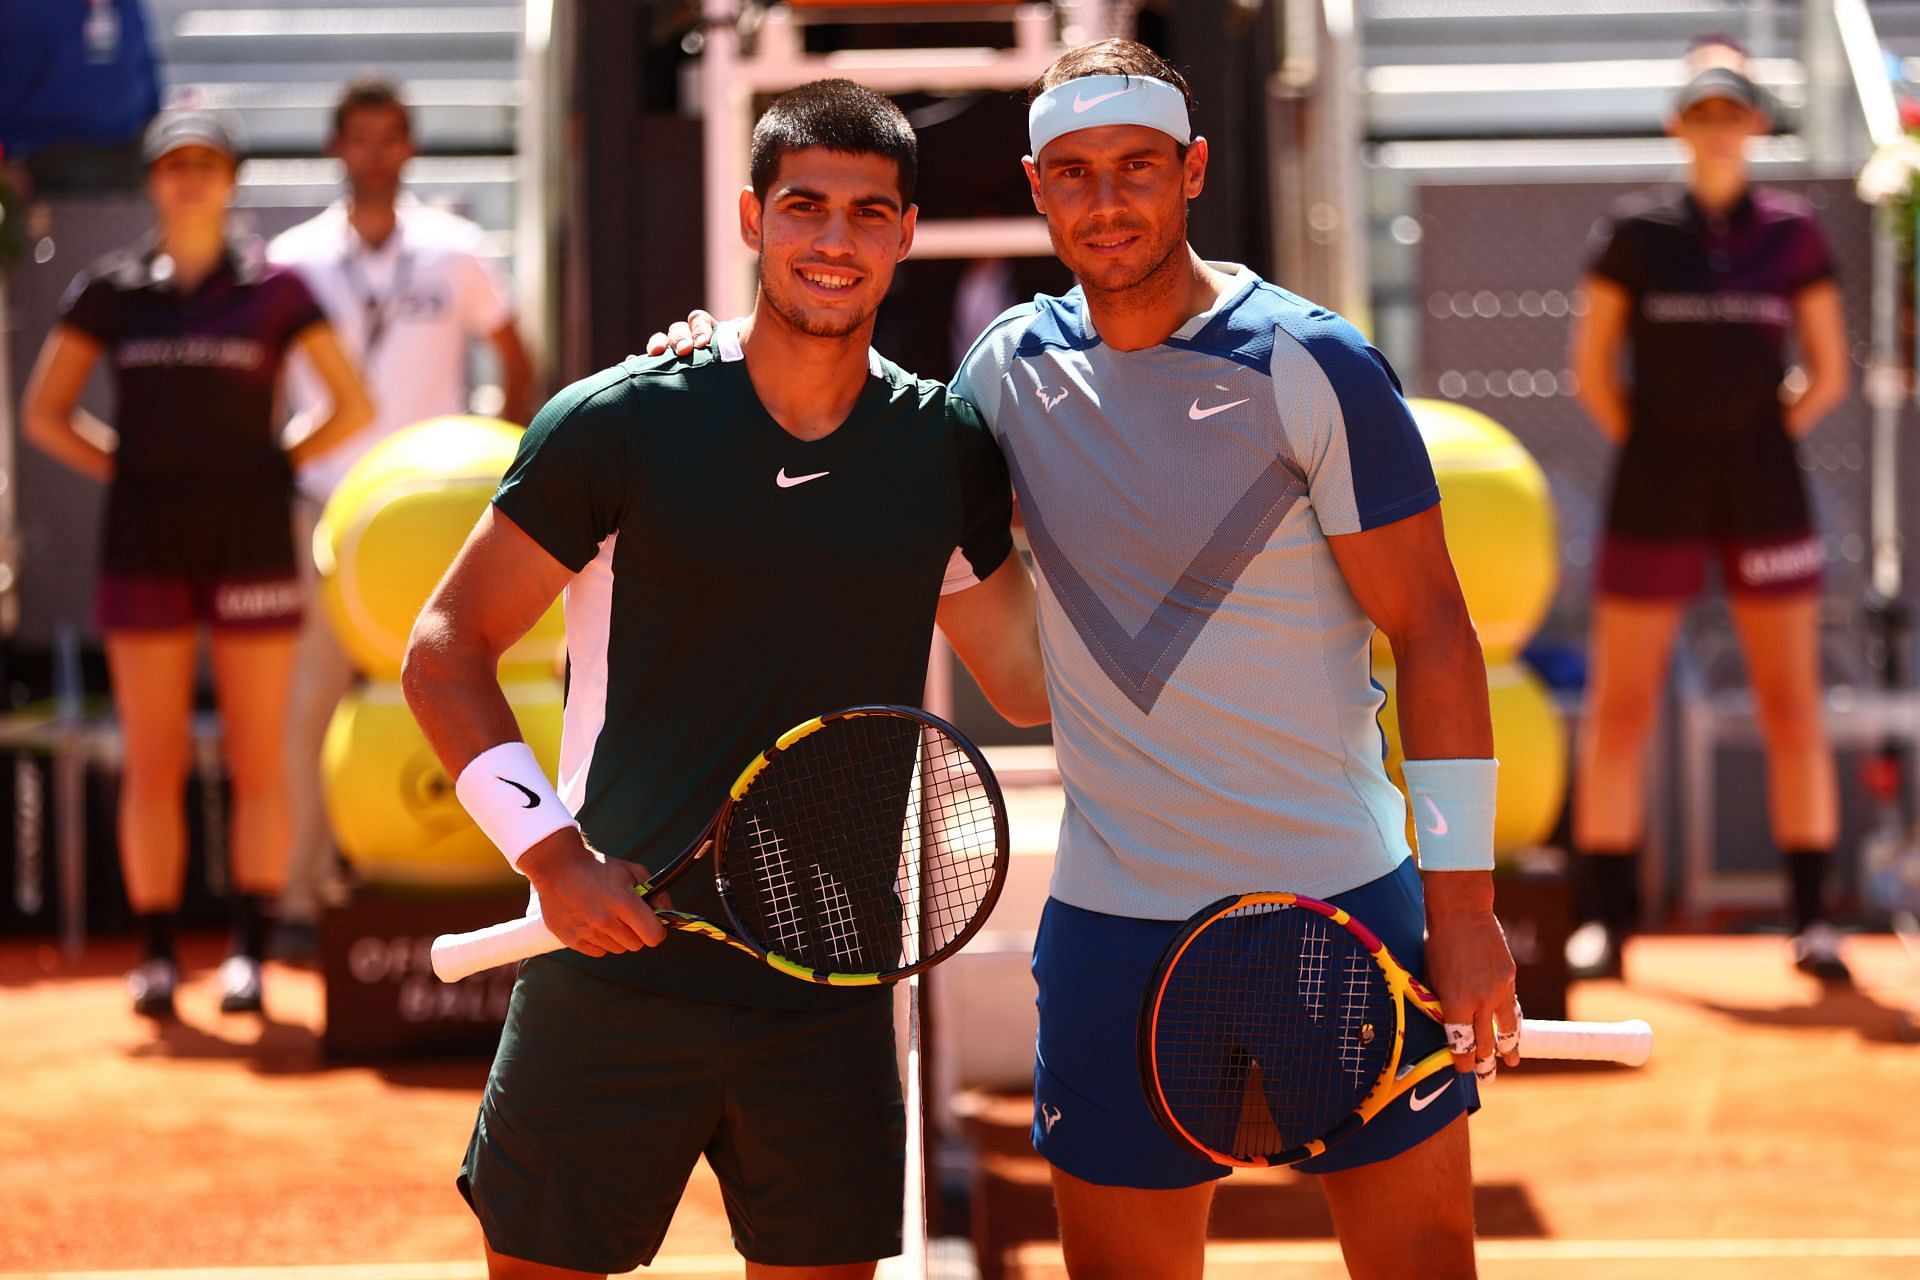 Alcaraz (left) and Nadal